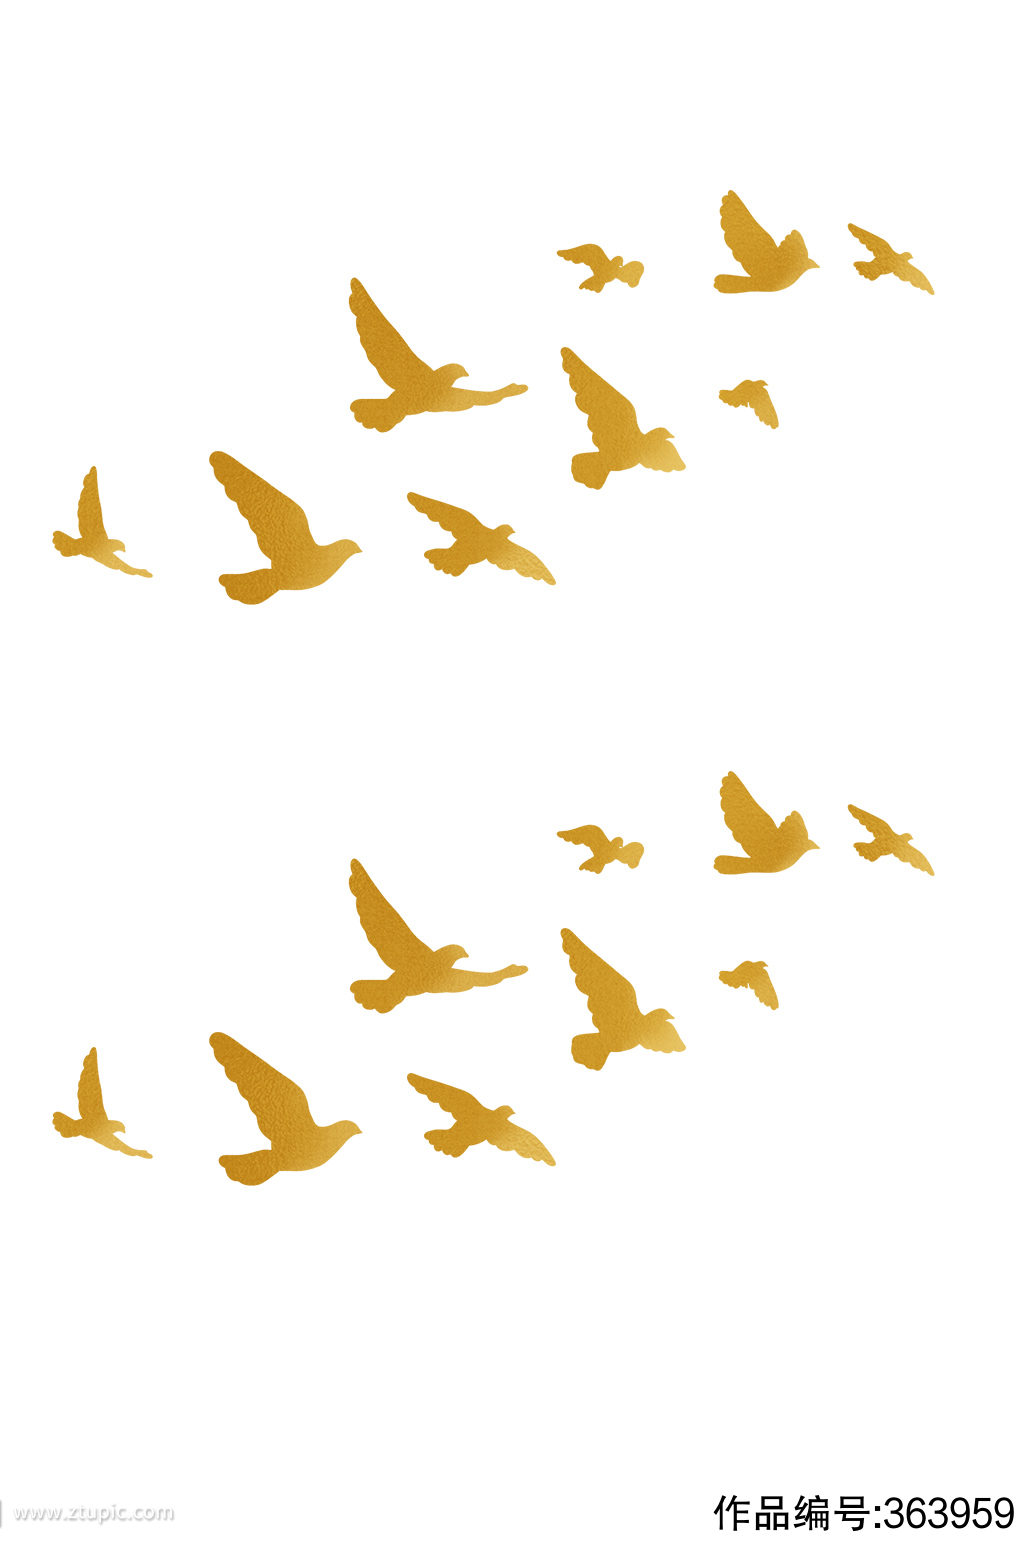 一群金色的鸽子元素